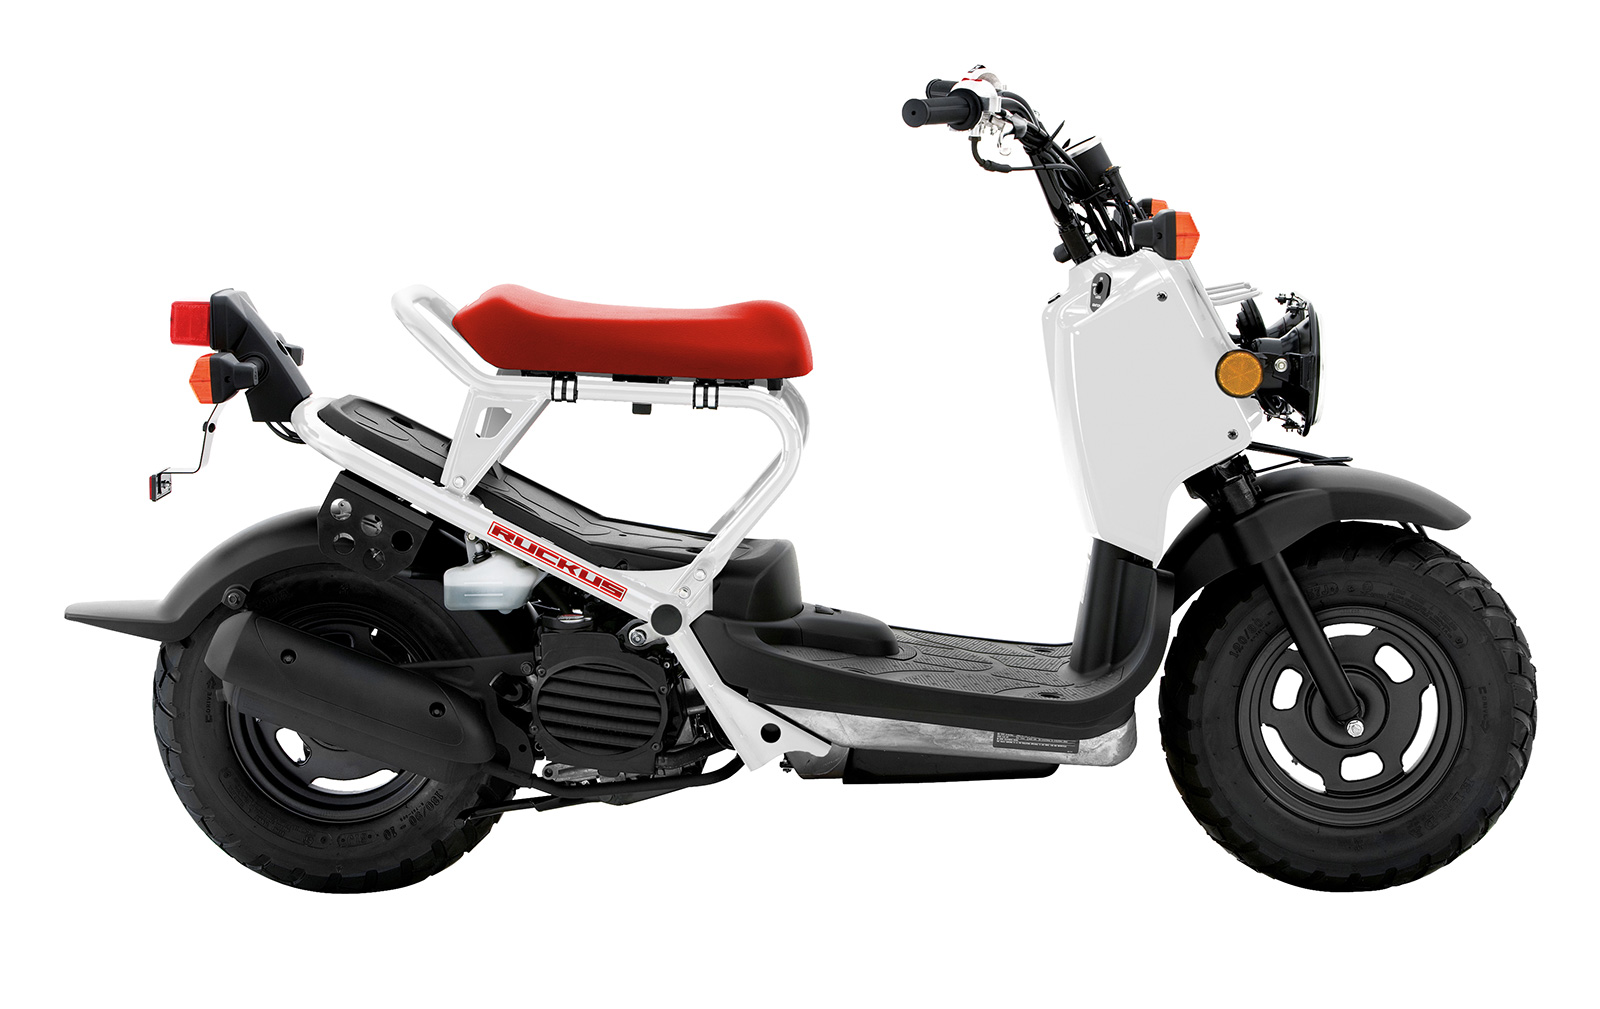 Meilleurs Scooter 50cc - Scooter BlogScooter Blog